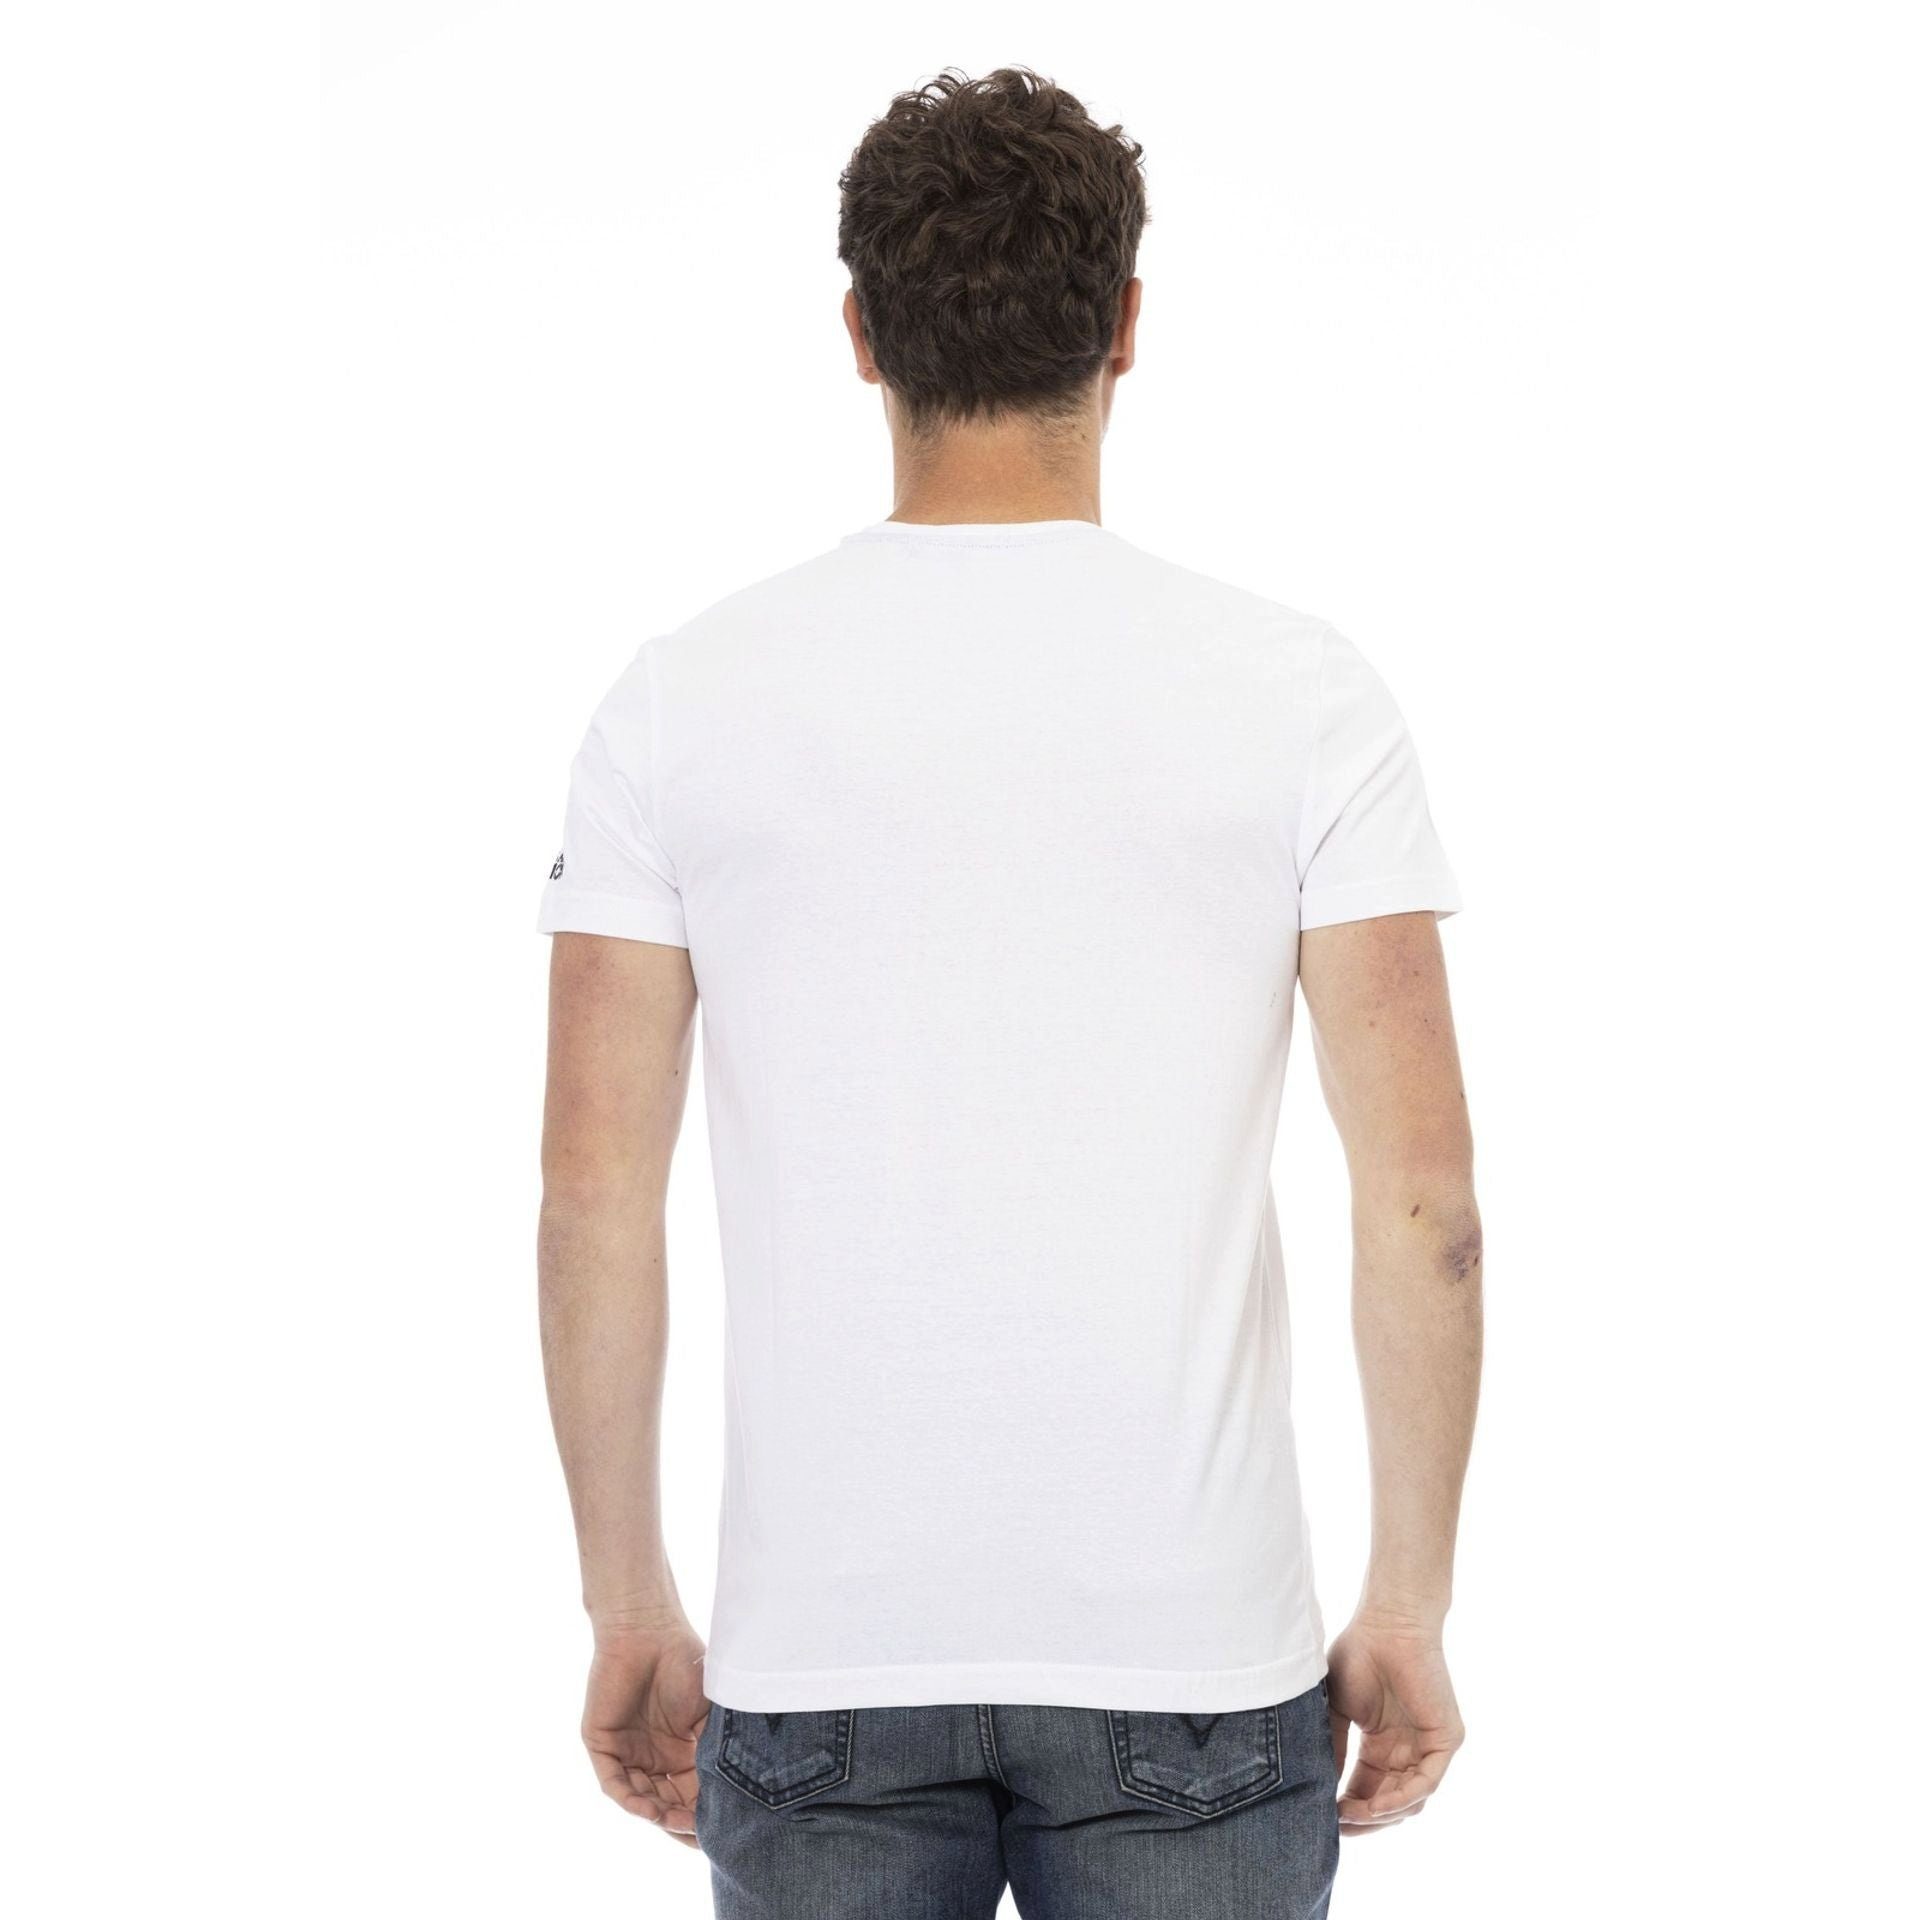 sich verleiht T-Shirts, das Note Weiß durch stilvolle subtile, Es Action Logo-Muster Trussardi T-Shirt zeichnet aber eine Trussardi aus, das